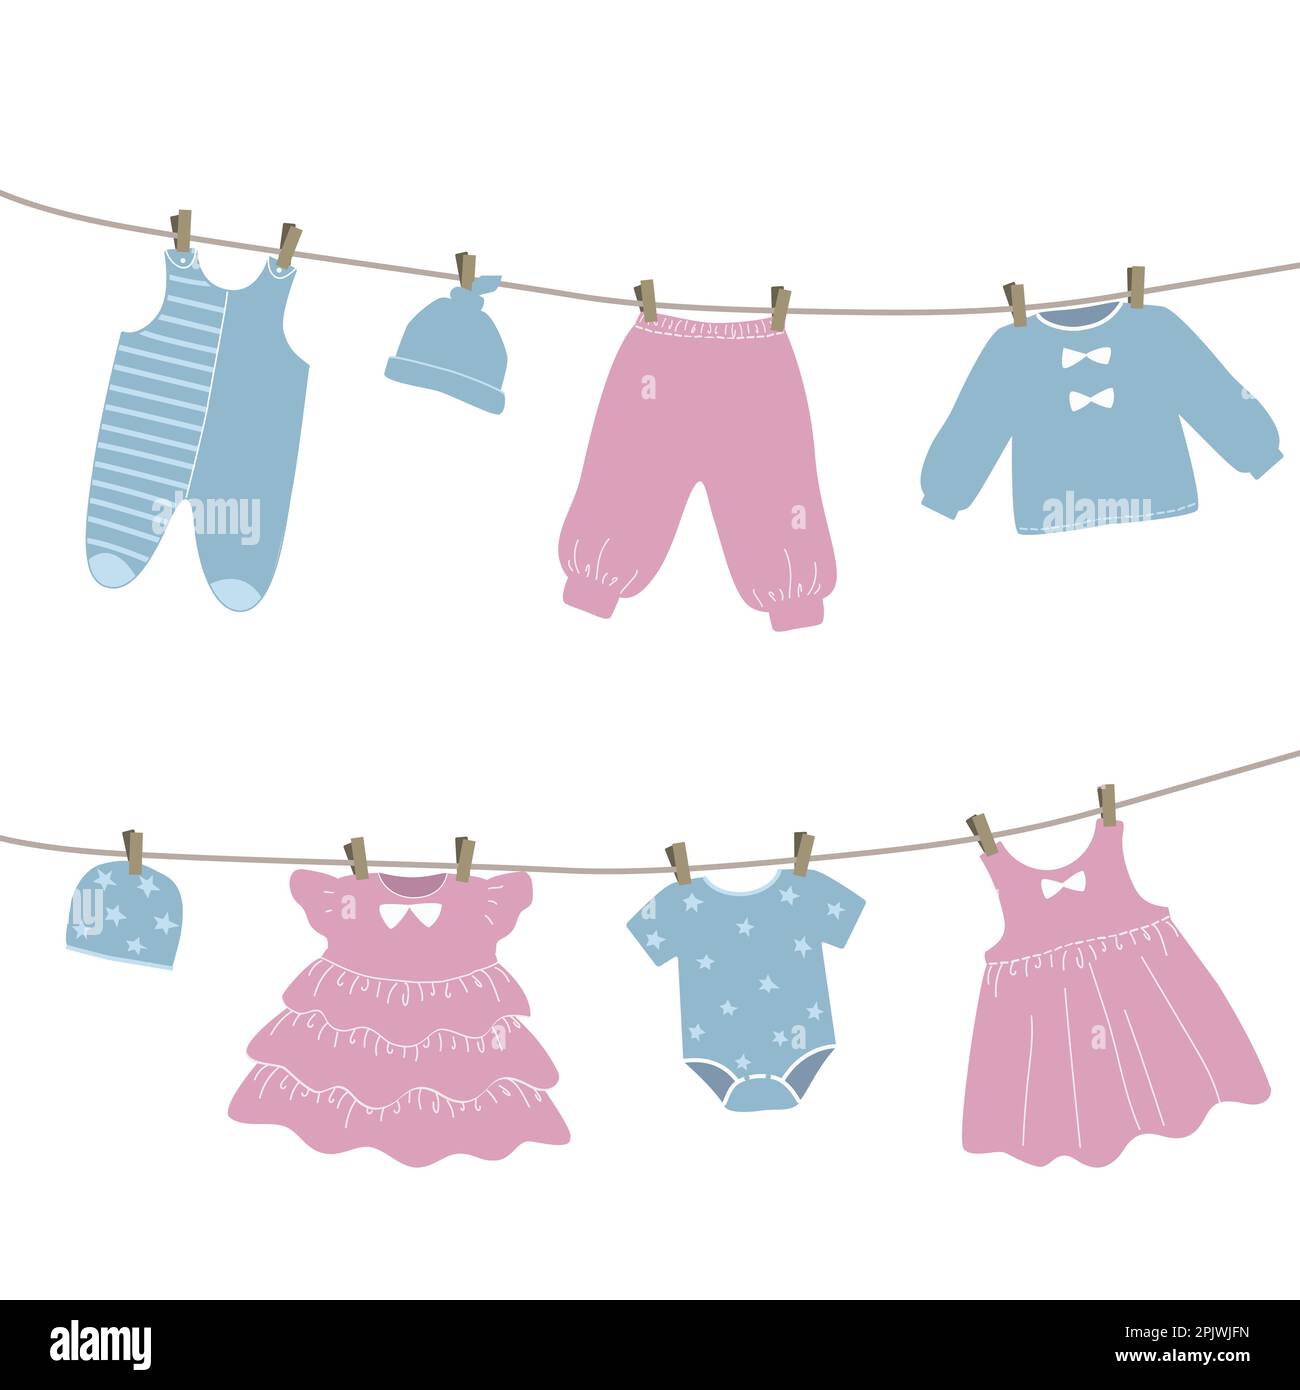 Les vêtements de bébé sont accrochés à la corde à linge. Les choses sont séchées sur des épingles à linge après le lavage. Illustration vectorielle en rose et bleu Illustration de Vecteur